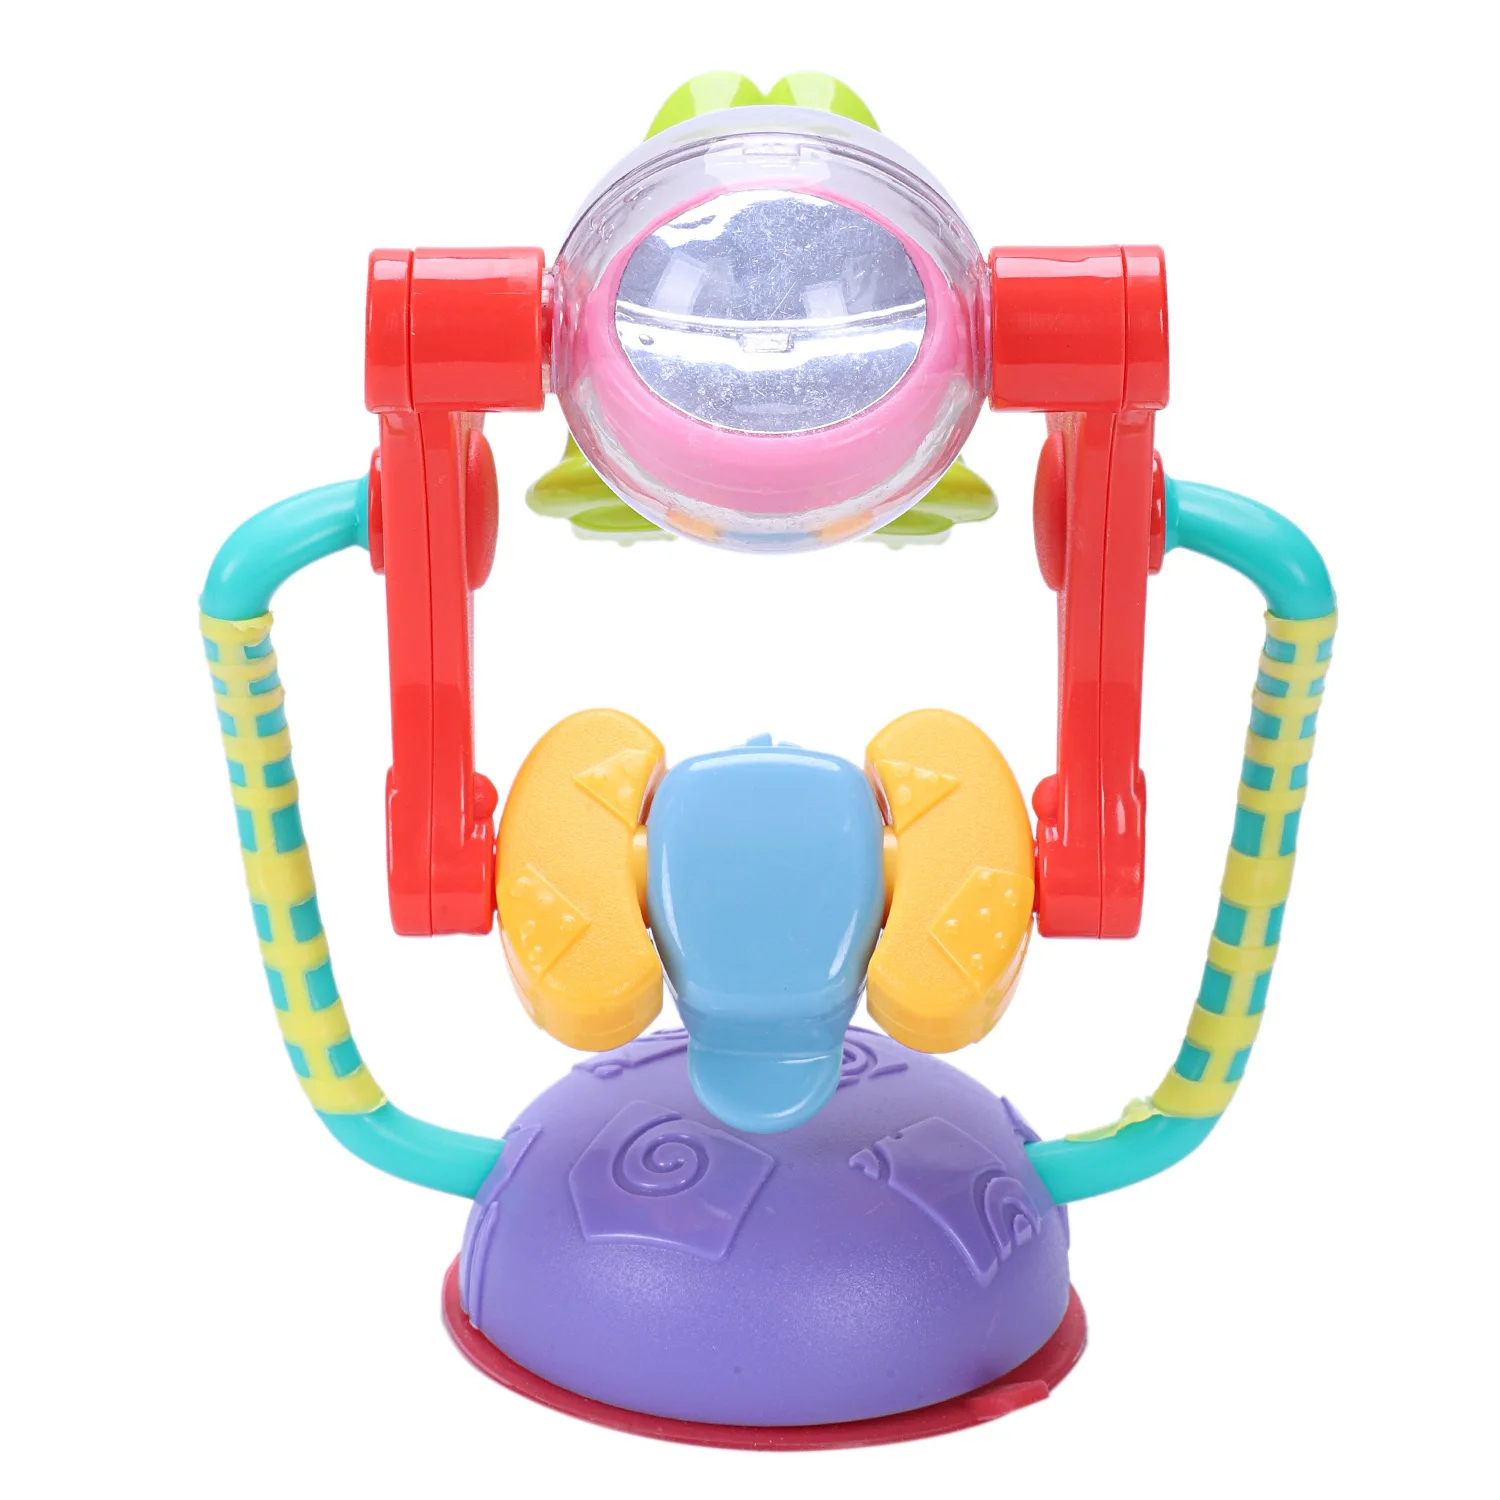 Детские игрушки животных колесо обозрения игрушка-погремушка развития интеллекта головоломки столик для кормления малыша корзину